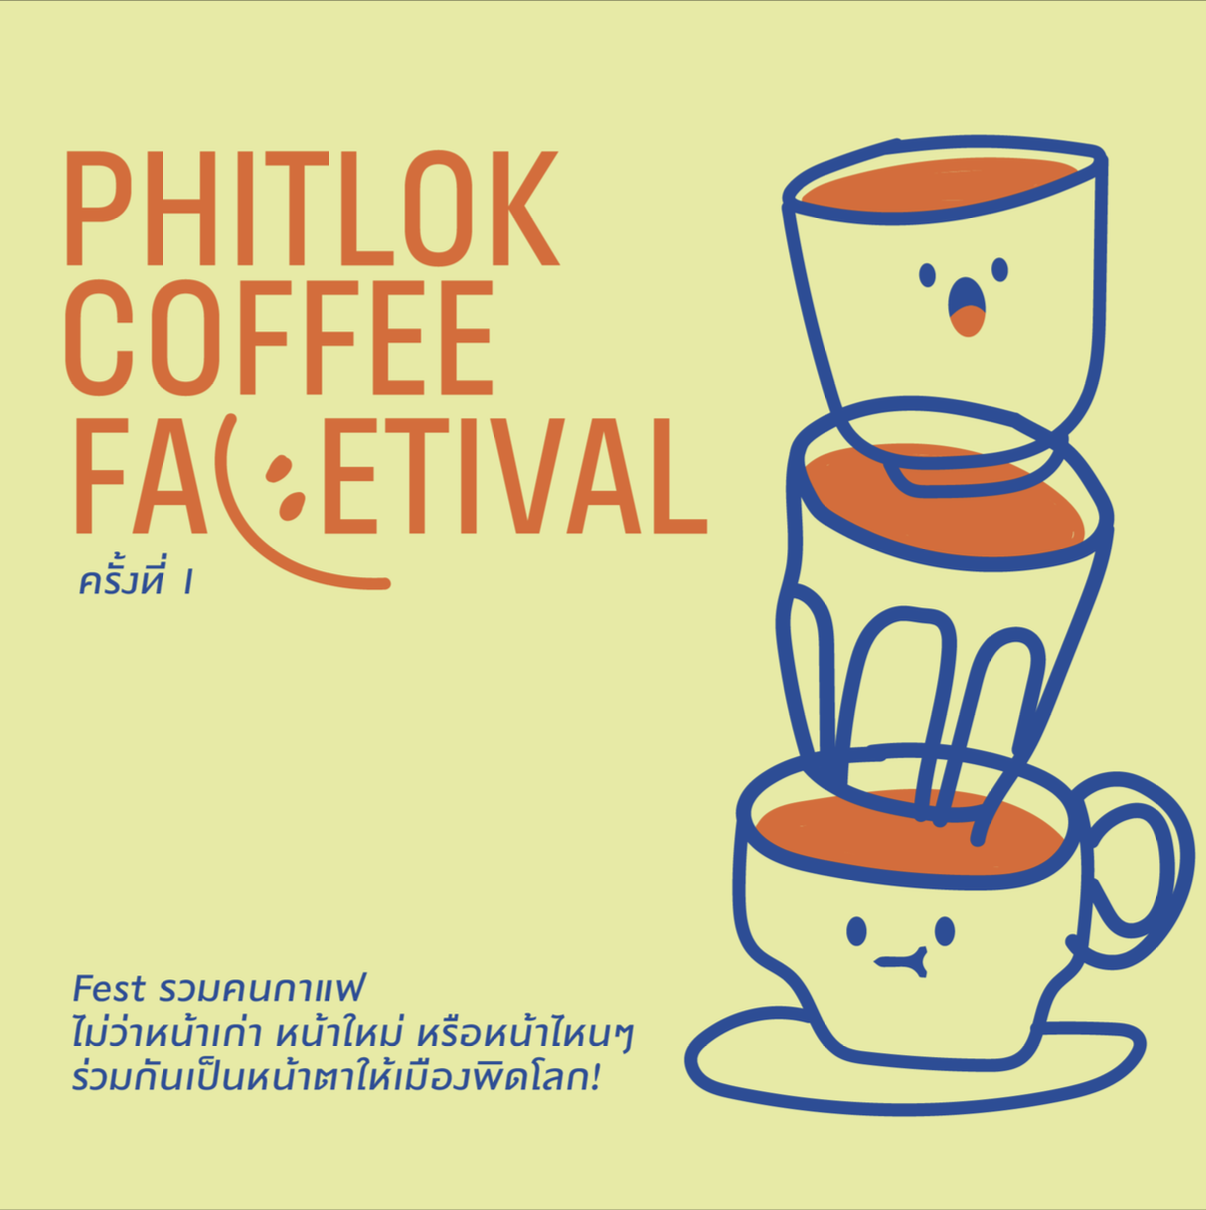 Phitlok Coffee Facetival